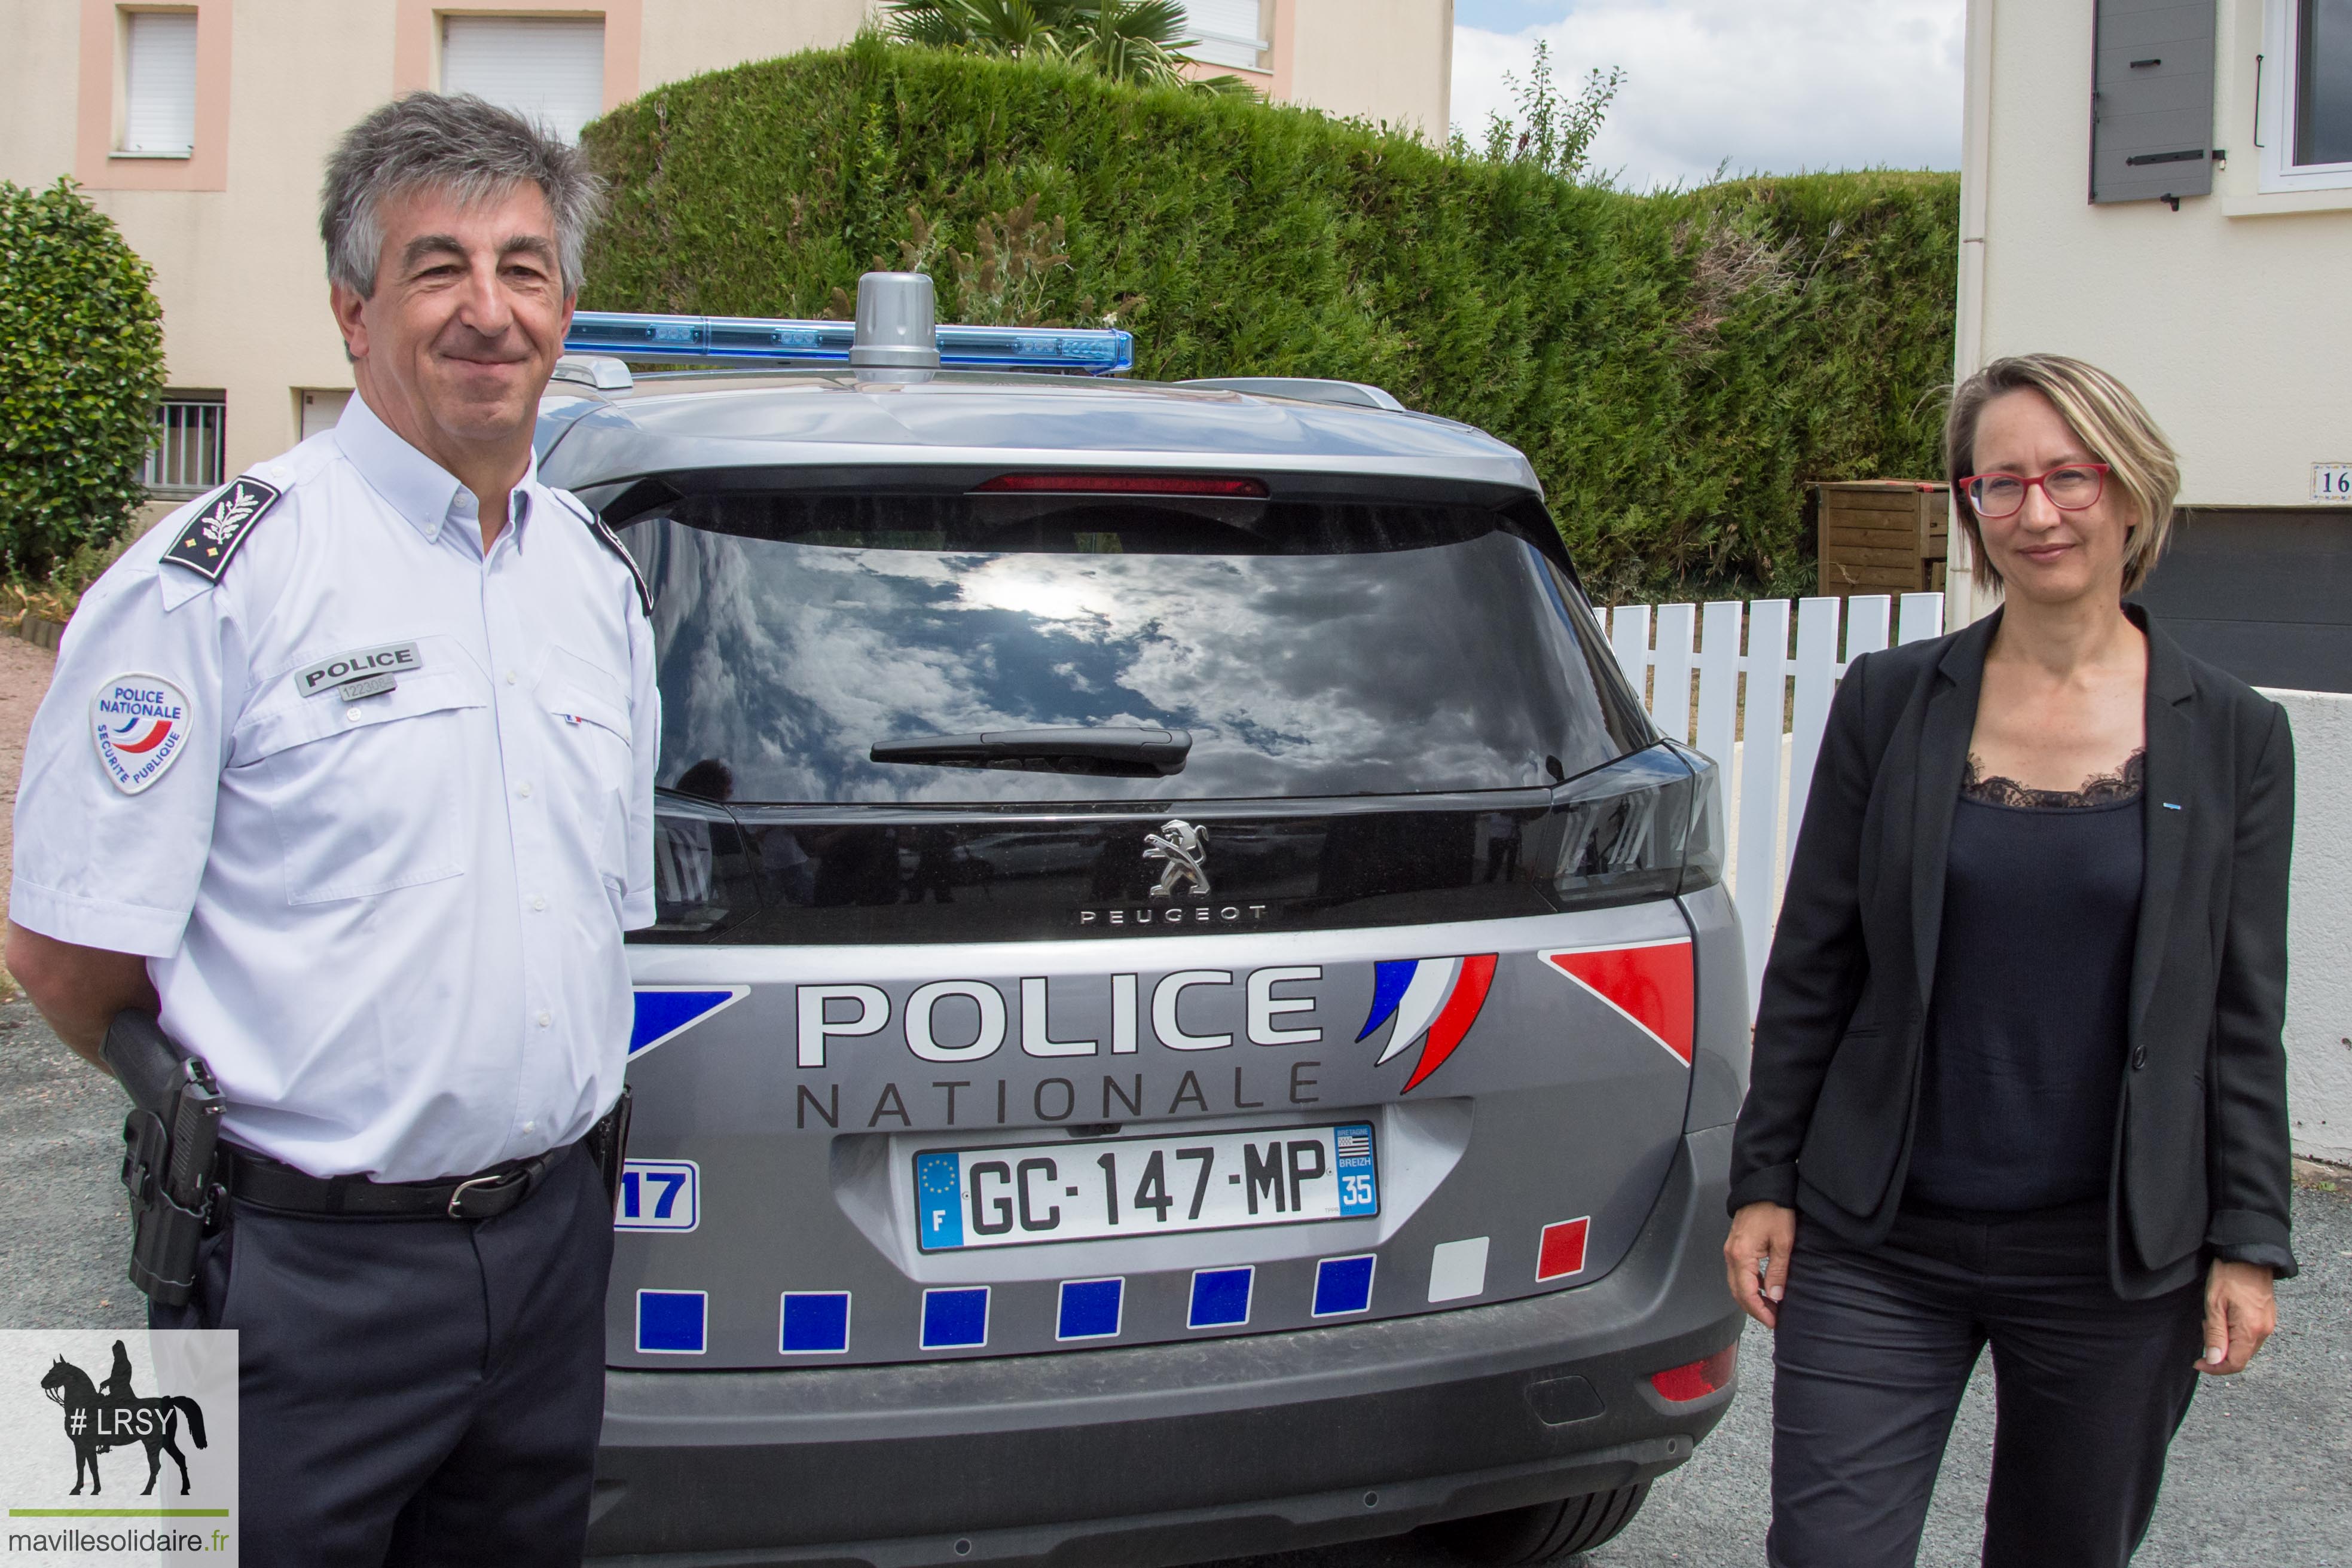 opération tranquillité vacances Police nationale gendarmerie LRSY mavillesolidaire.fr 1 2